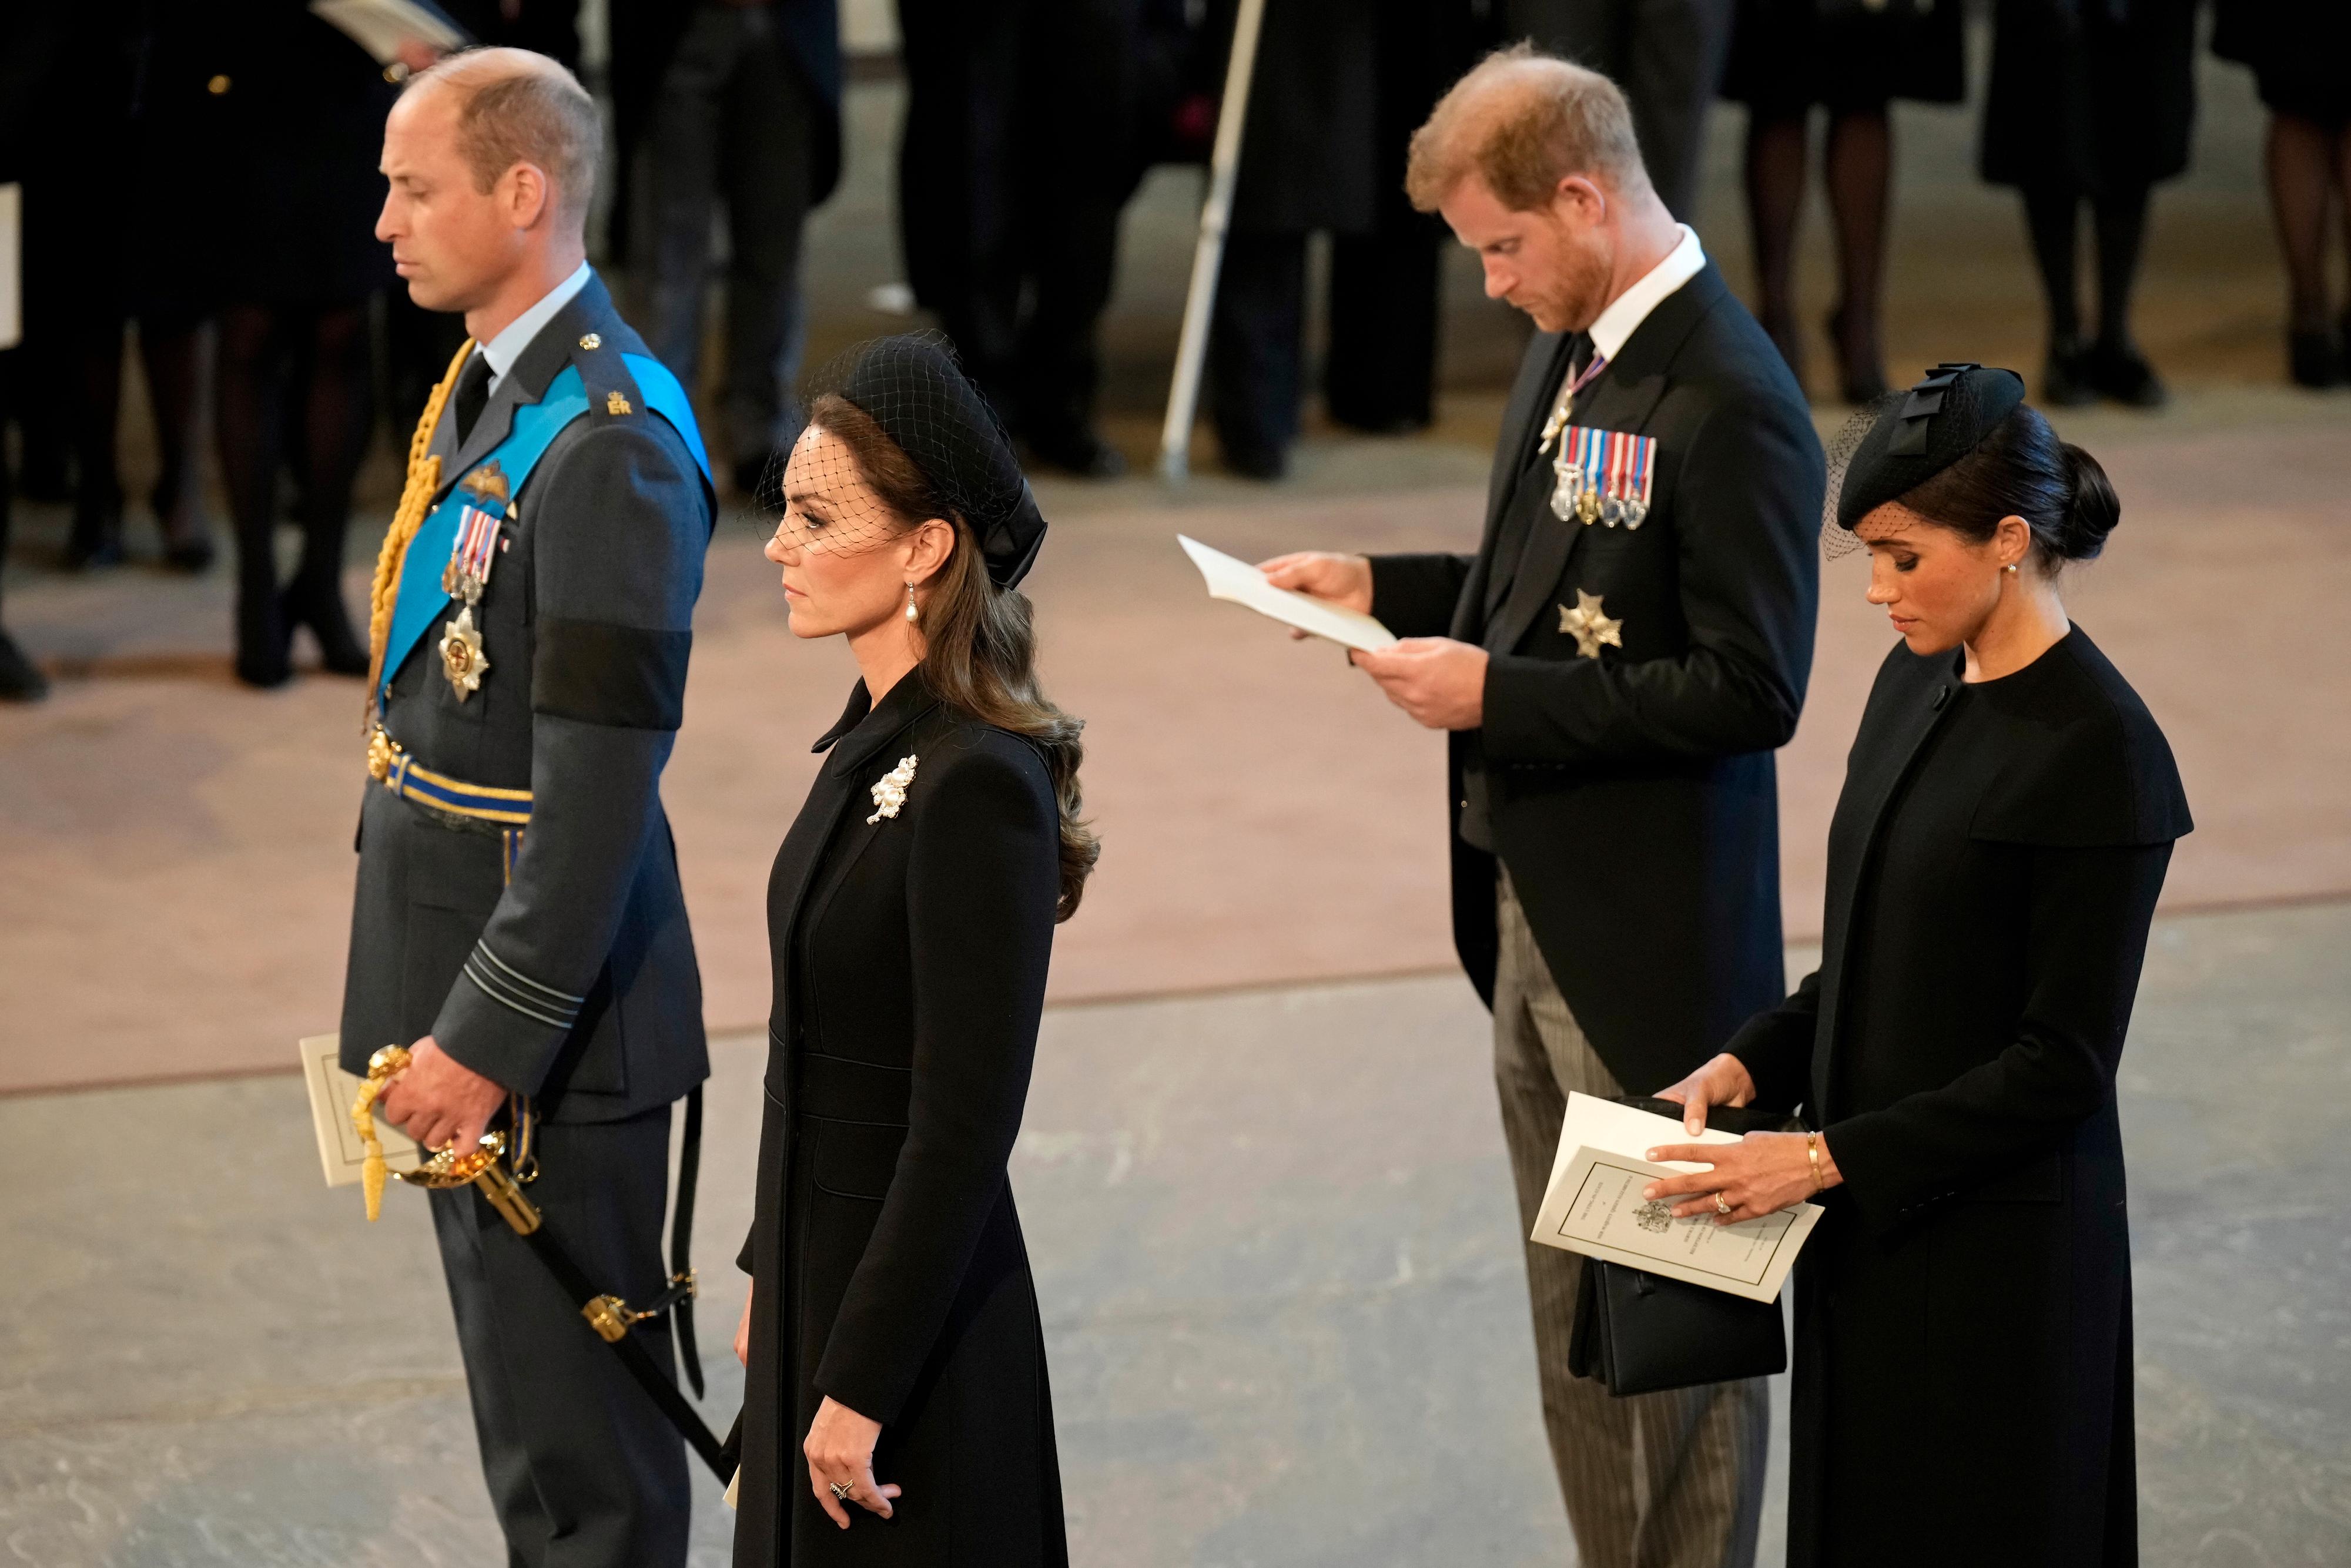 Etter dronningens bortfall har både prinsesse Kate og hertuginne Meghan tatt i bruk perler. Her er de inne i Westminster Hall 14. september.